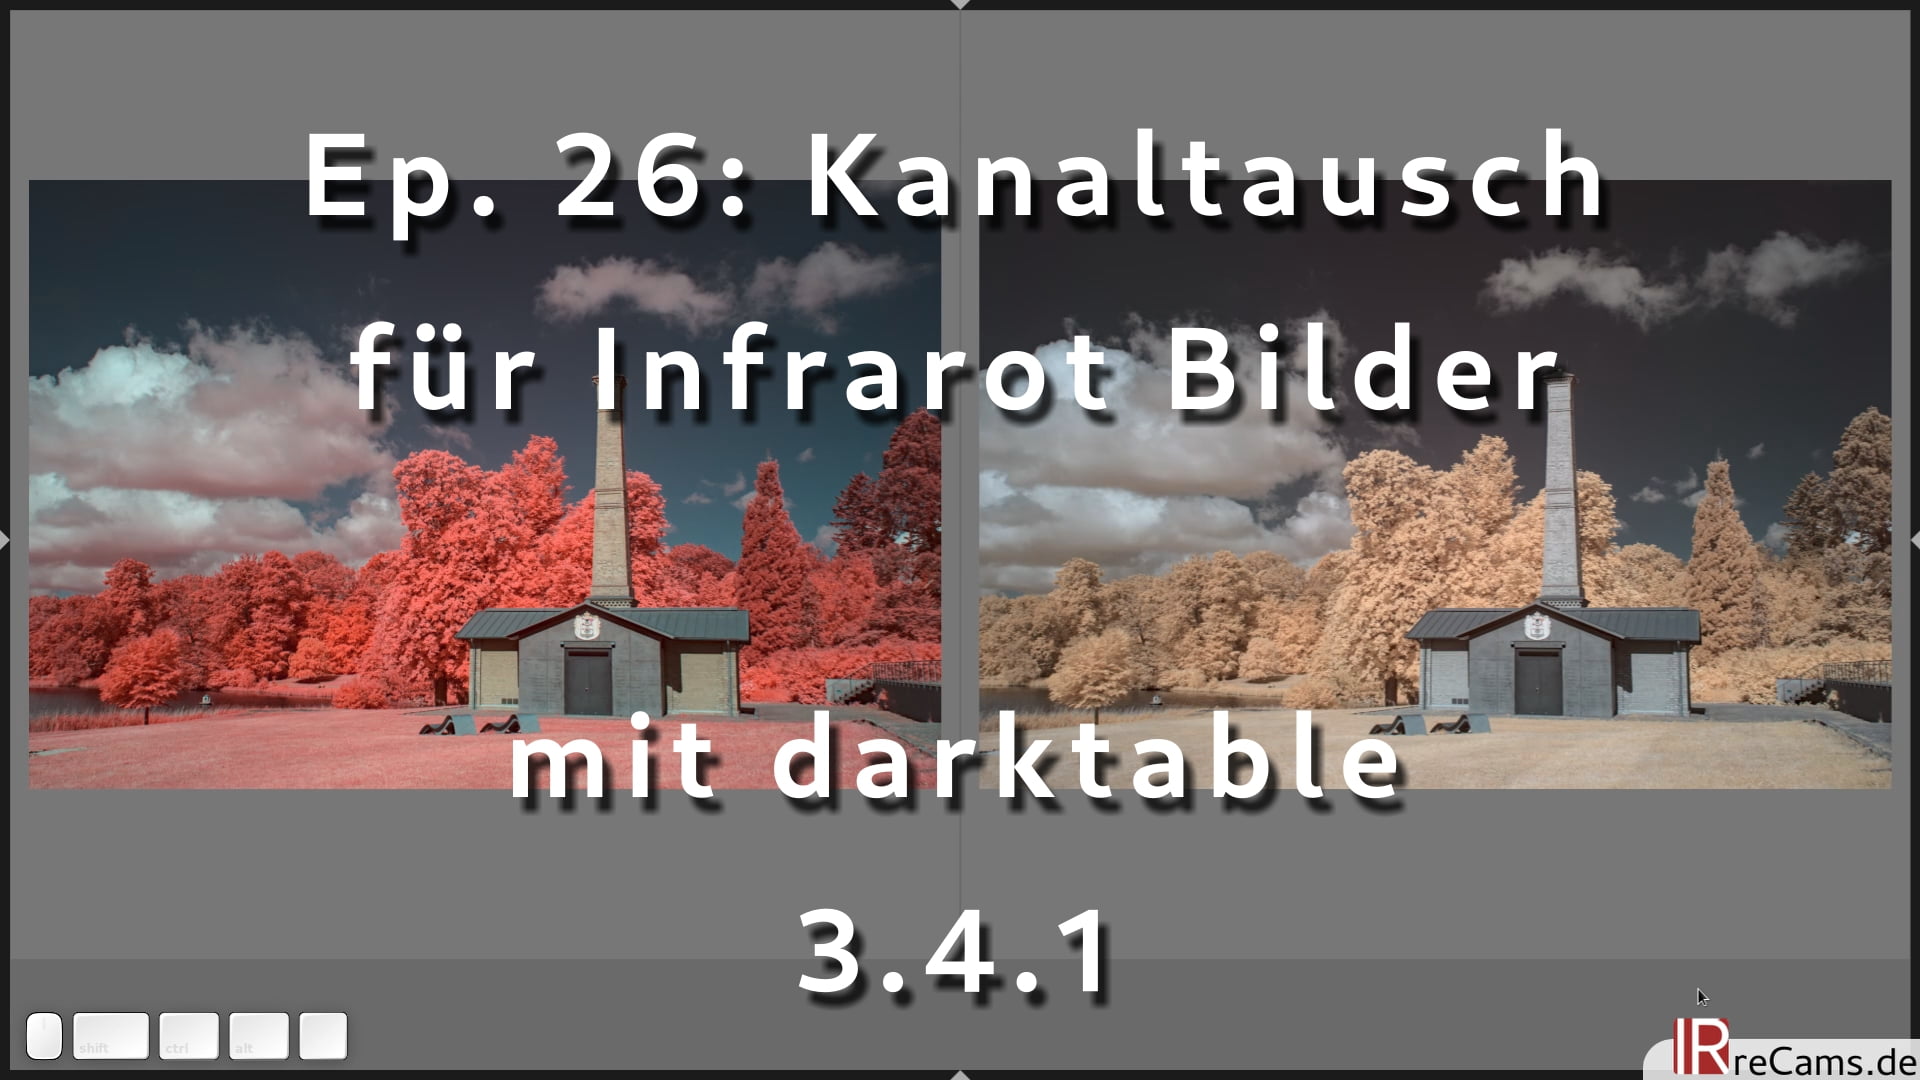 Ep. 26: Kanaltausch für Infrarot Bilder mit darktable 3.4.1 und dem Modul Farbkalibrierung